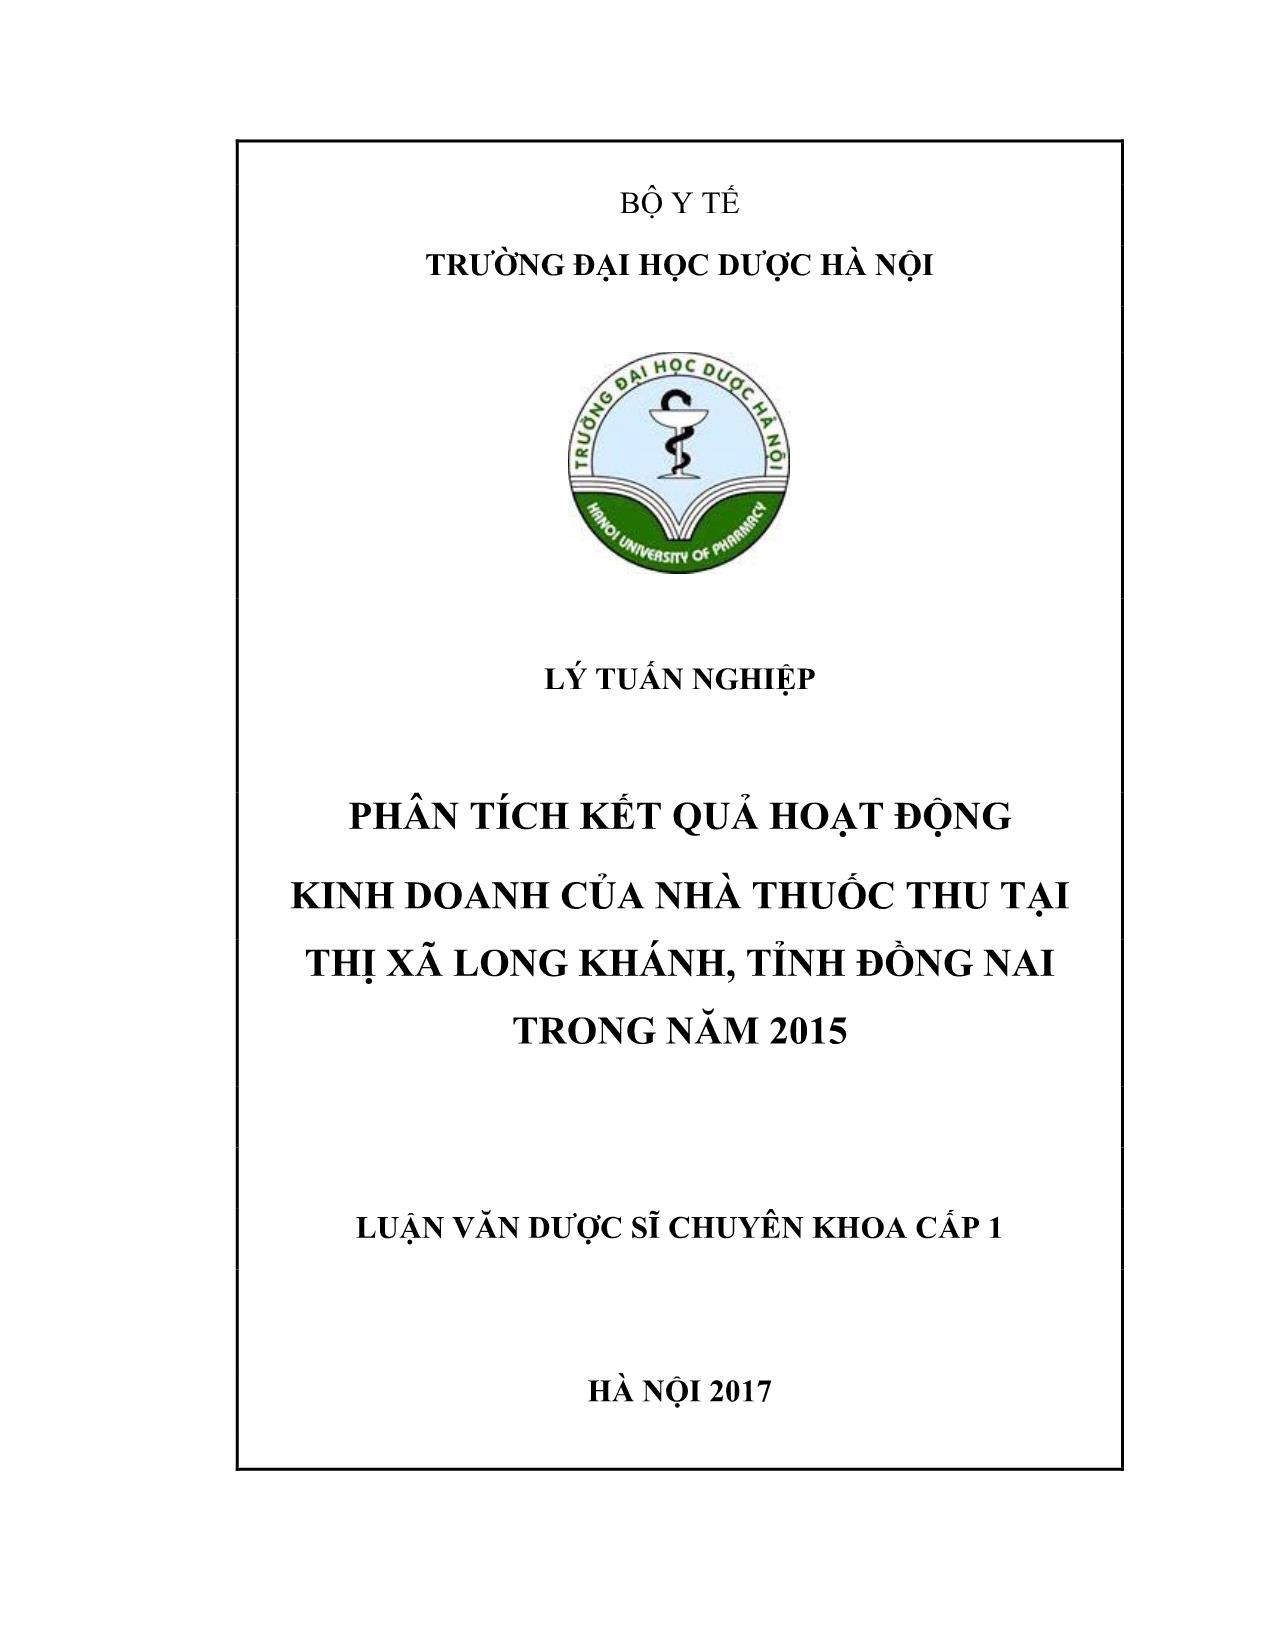 Luận văn Phẳn tích kết quả hoạt động kinh doanh của nhà thuốc thu tại thị xã Long Khánh, tỉnh Đồng Nai trong năm 2015 trang 1